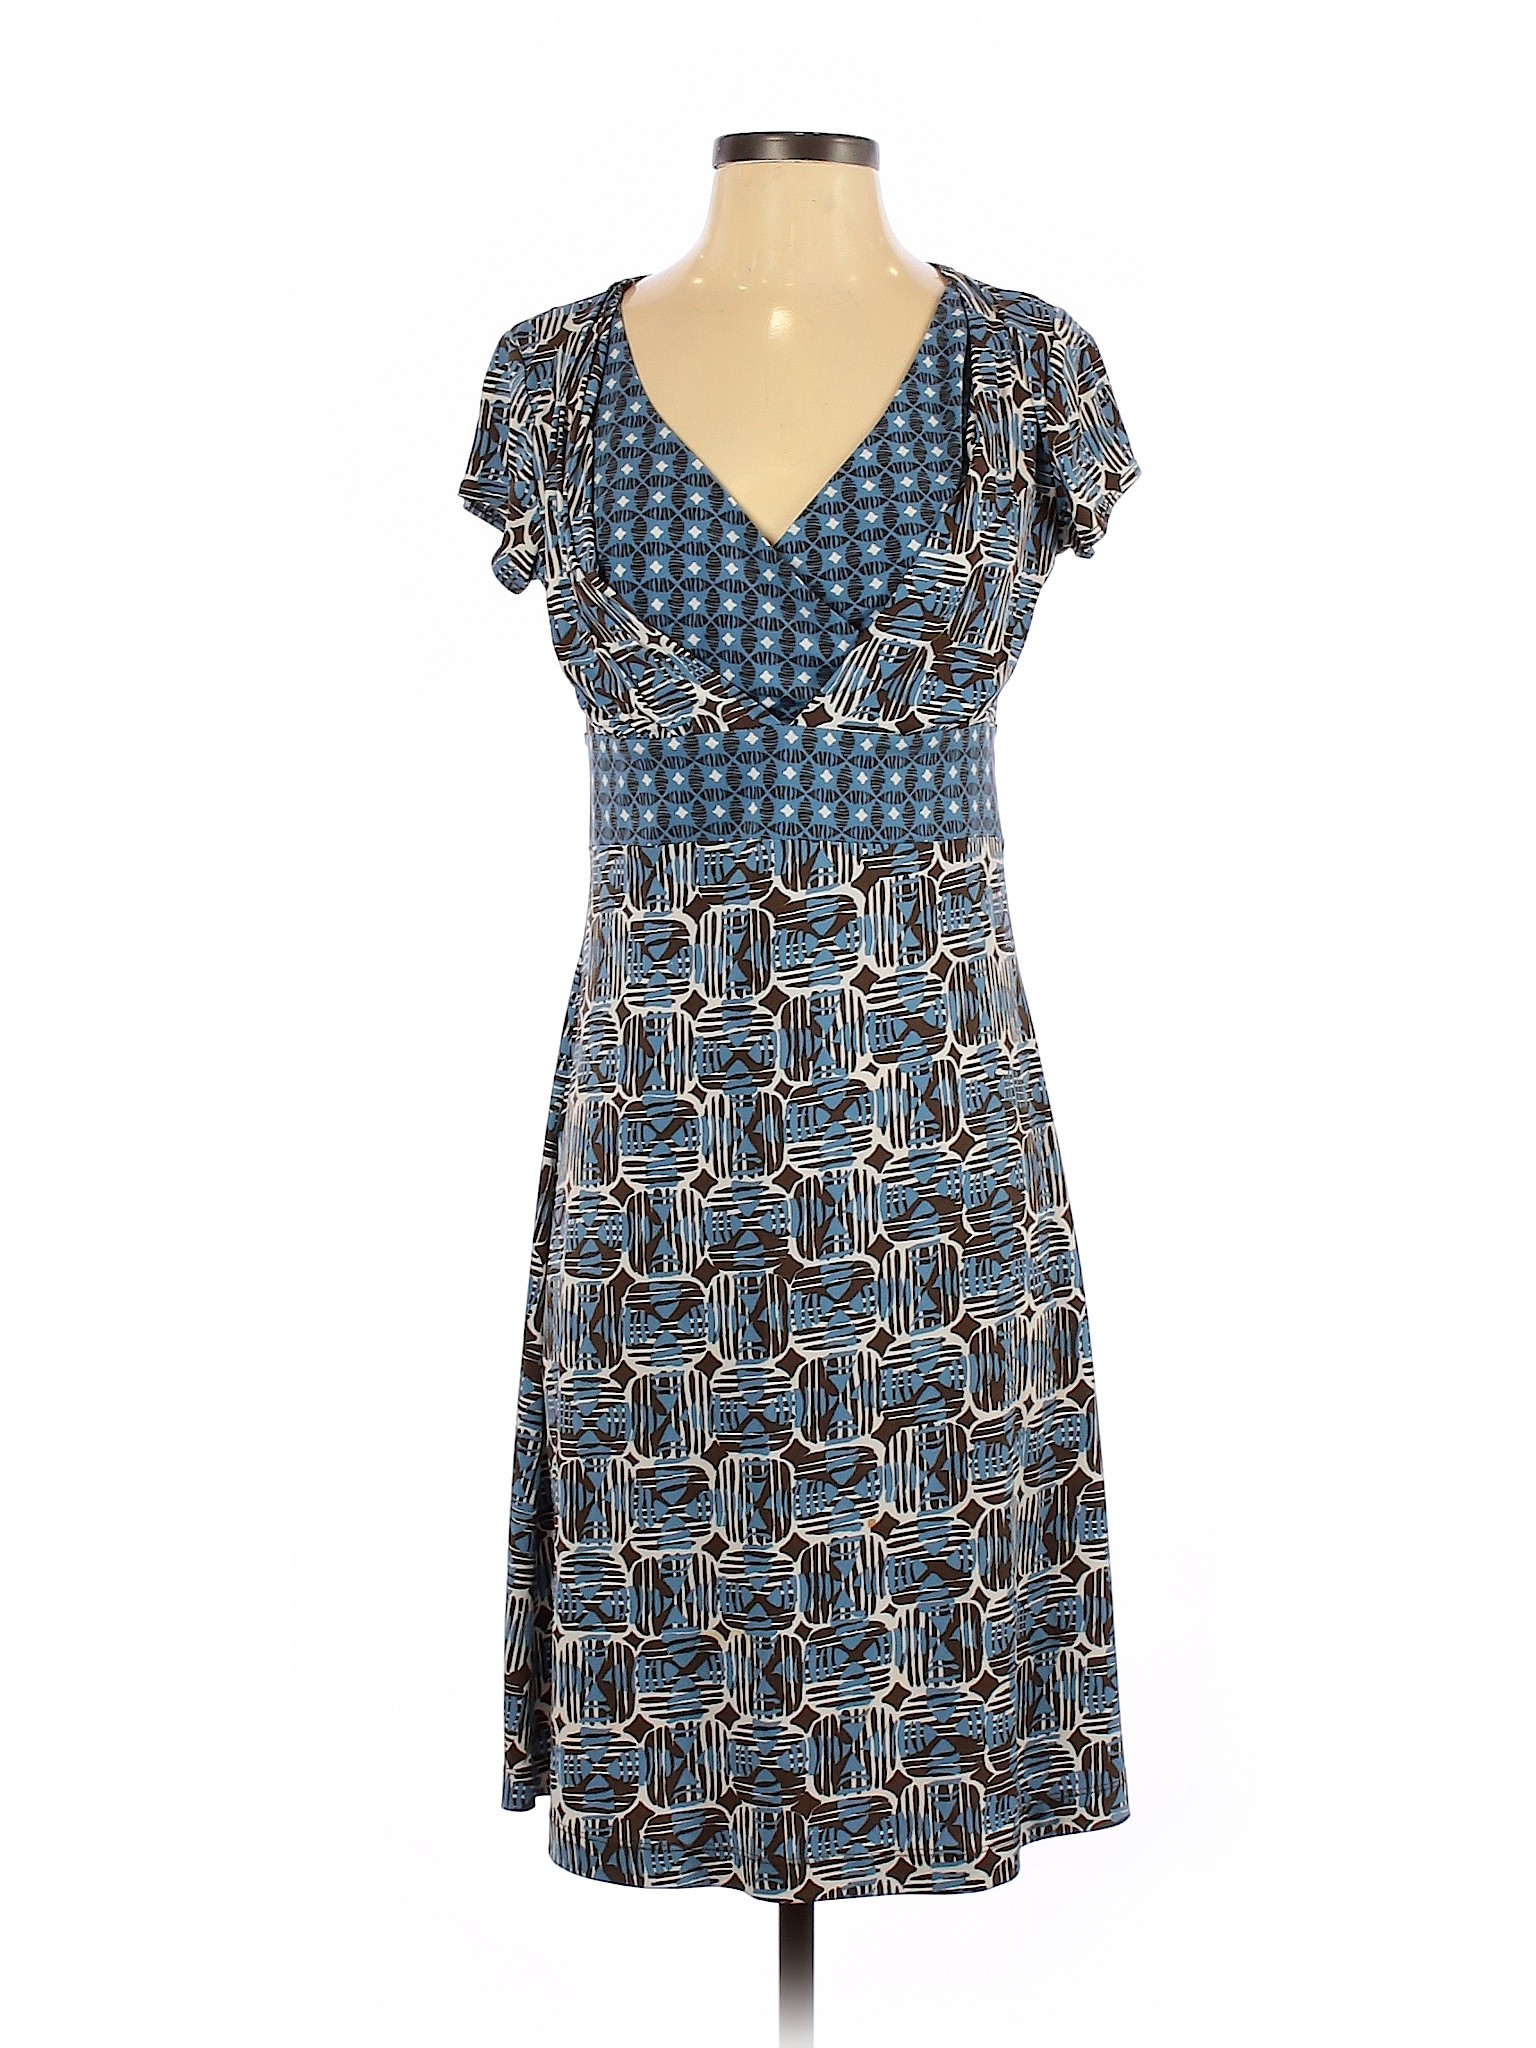 Axcess Women Blue Casual Dress S | eBay